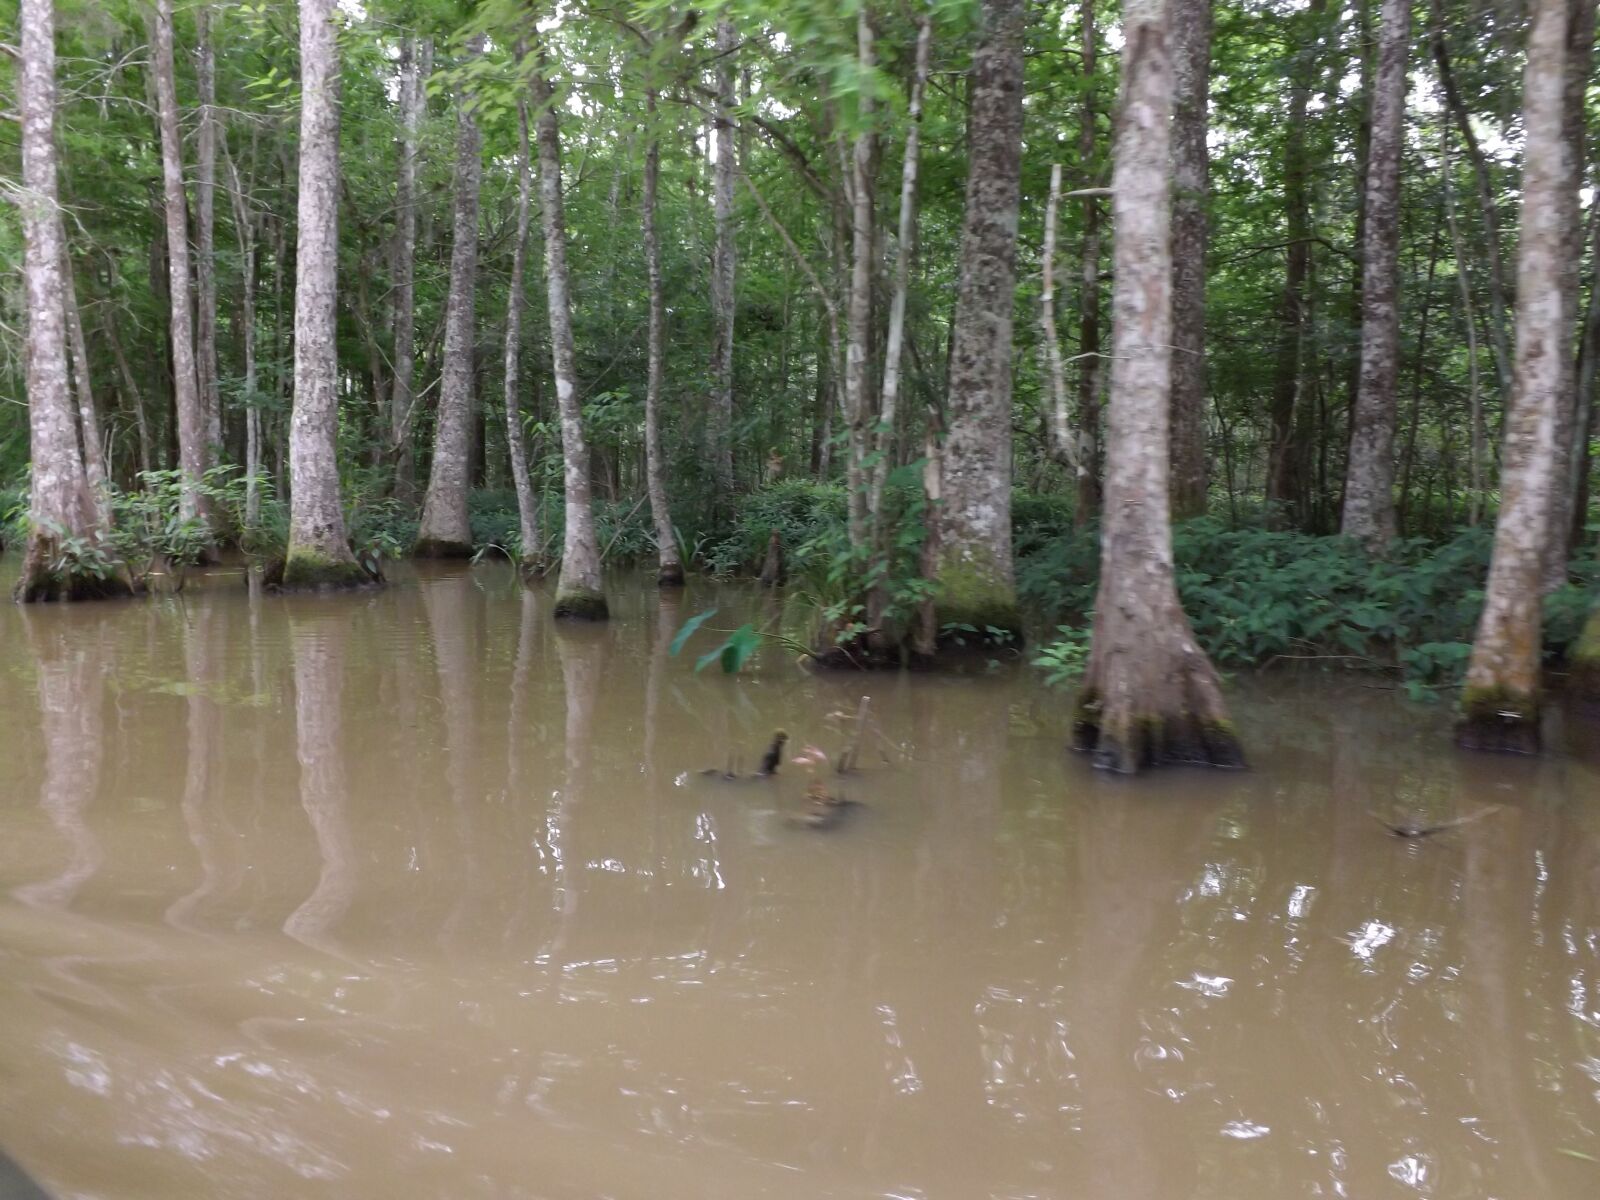 Fujifilm FinePix S4200 sample photo. Louisiana swamps, cypress trees photography